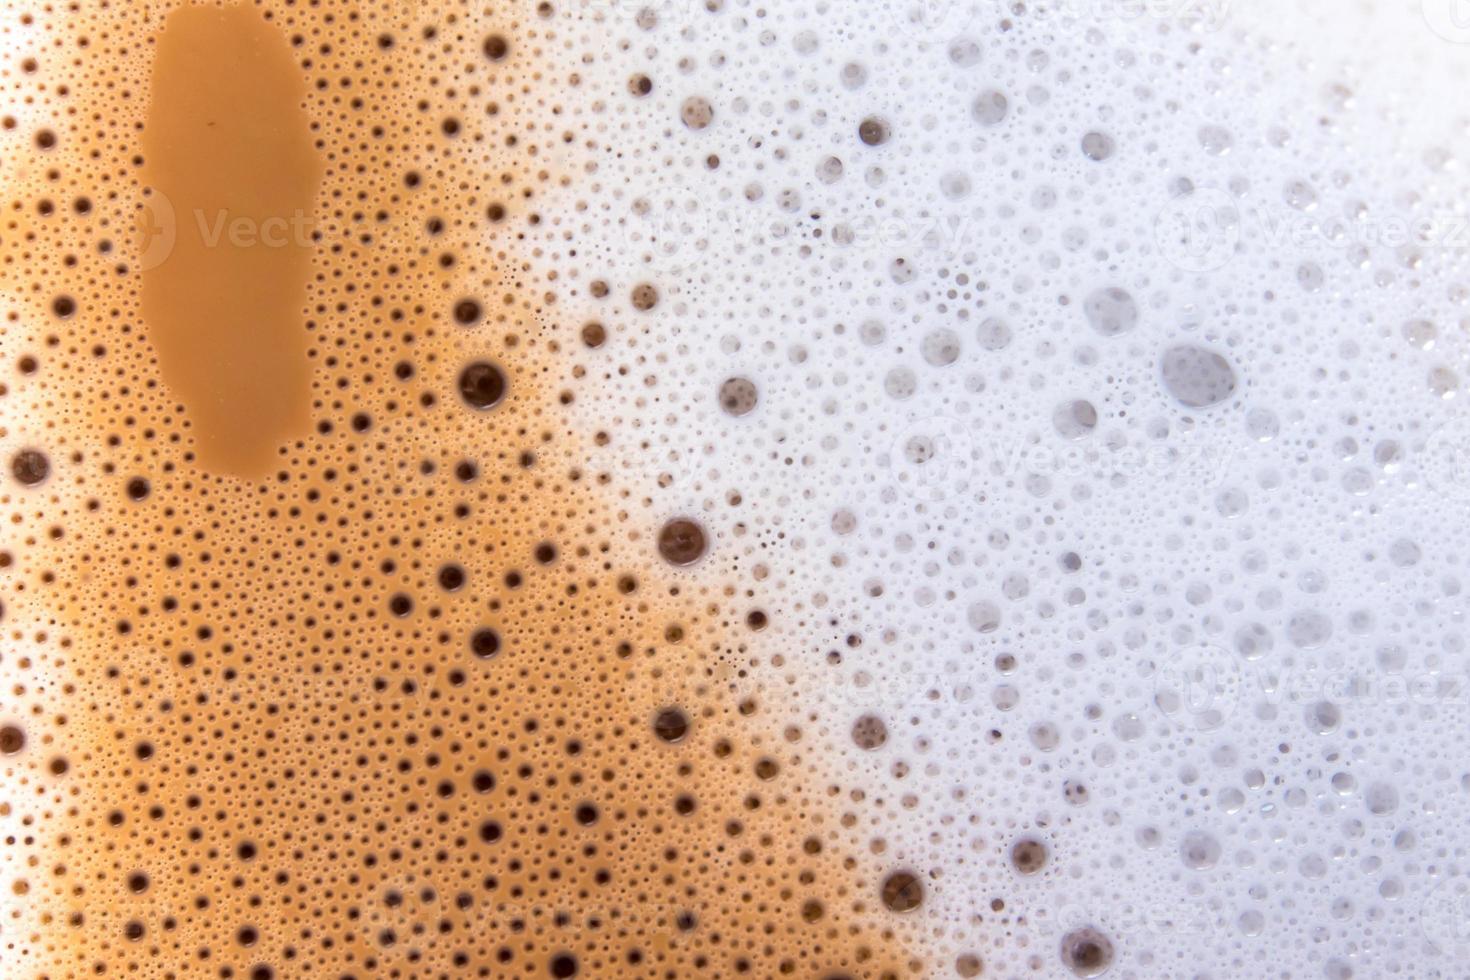 textura superficial de café com leite quente e espuma macia foto